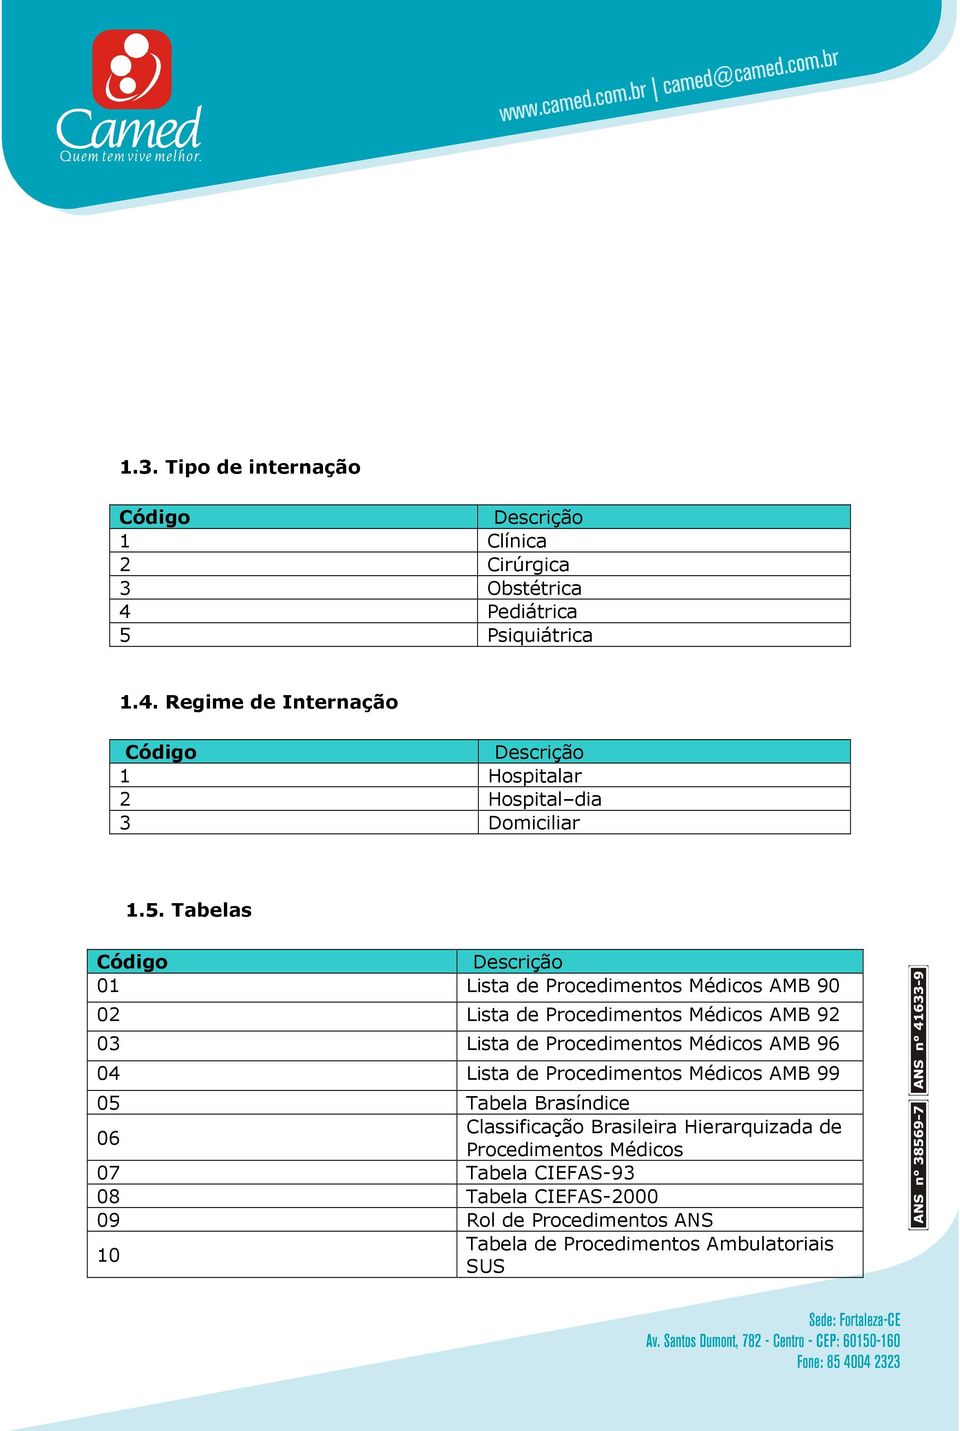 04 Lista de Procedimentos Médicos AMB 99 05 Tabela Brasíndice 06 Classificação Brasileira Hierarquizada de Procedimentos Médicos 07